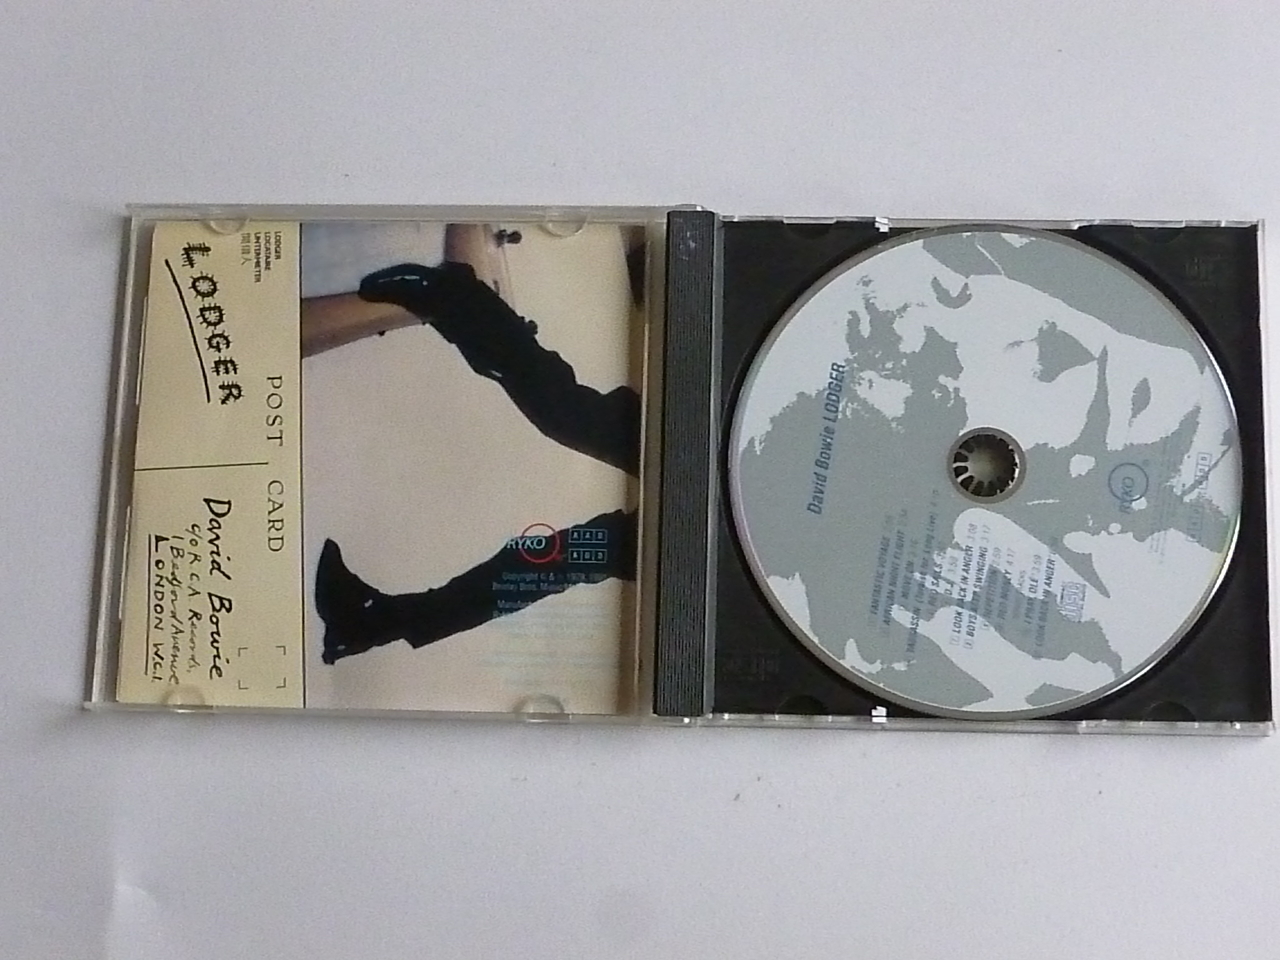 Incident, evenement Uitwerpselen cafetaria David Bowie - Lodger (Ryko) - Tweedehands CD